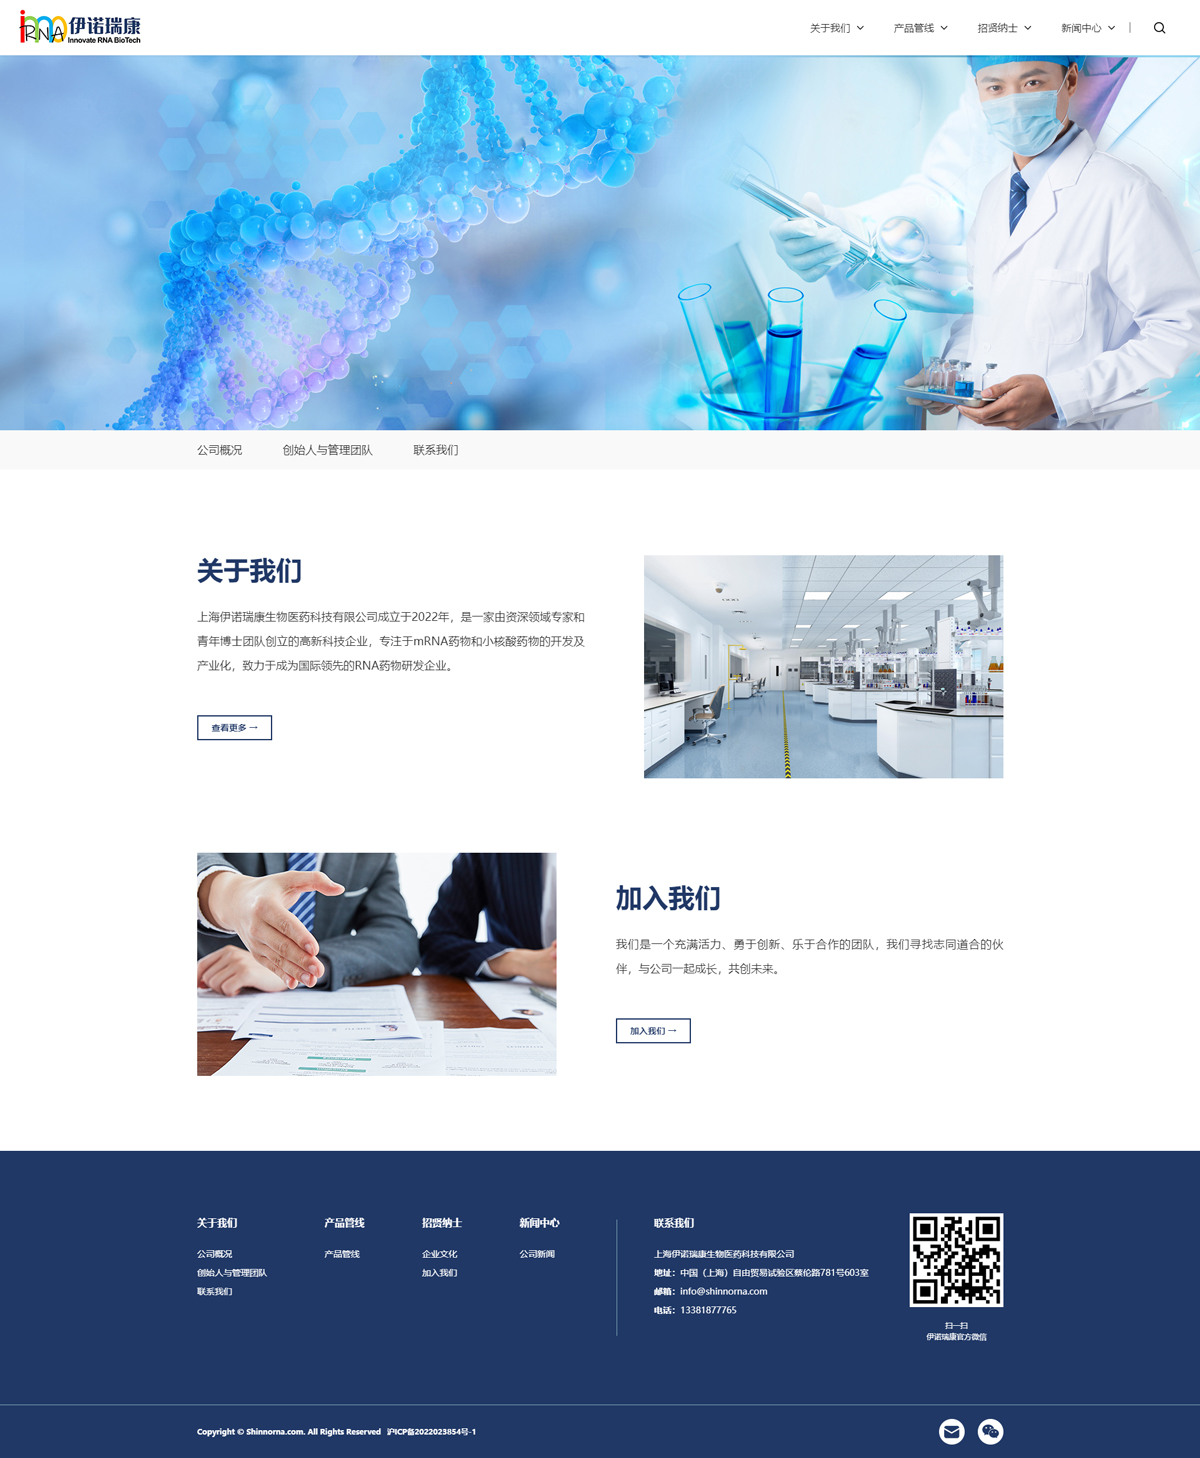 上海伊诺瑞康生物医药科技有限公司